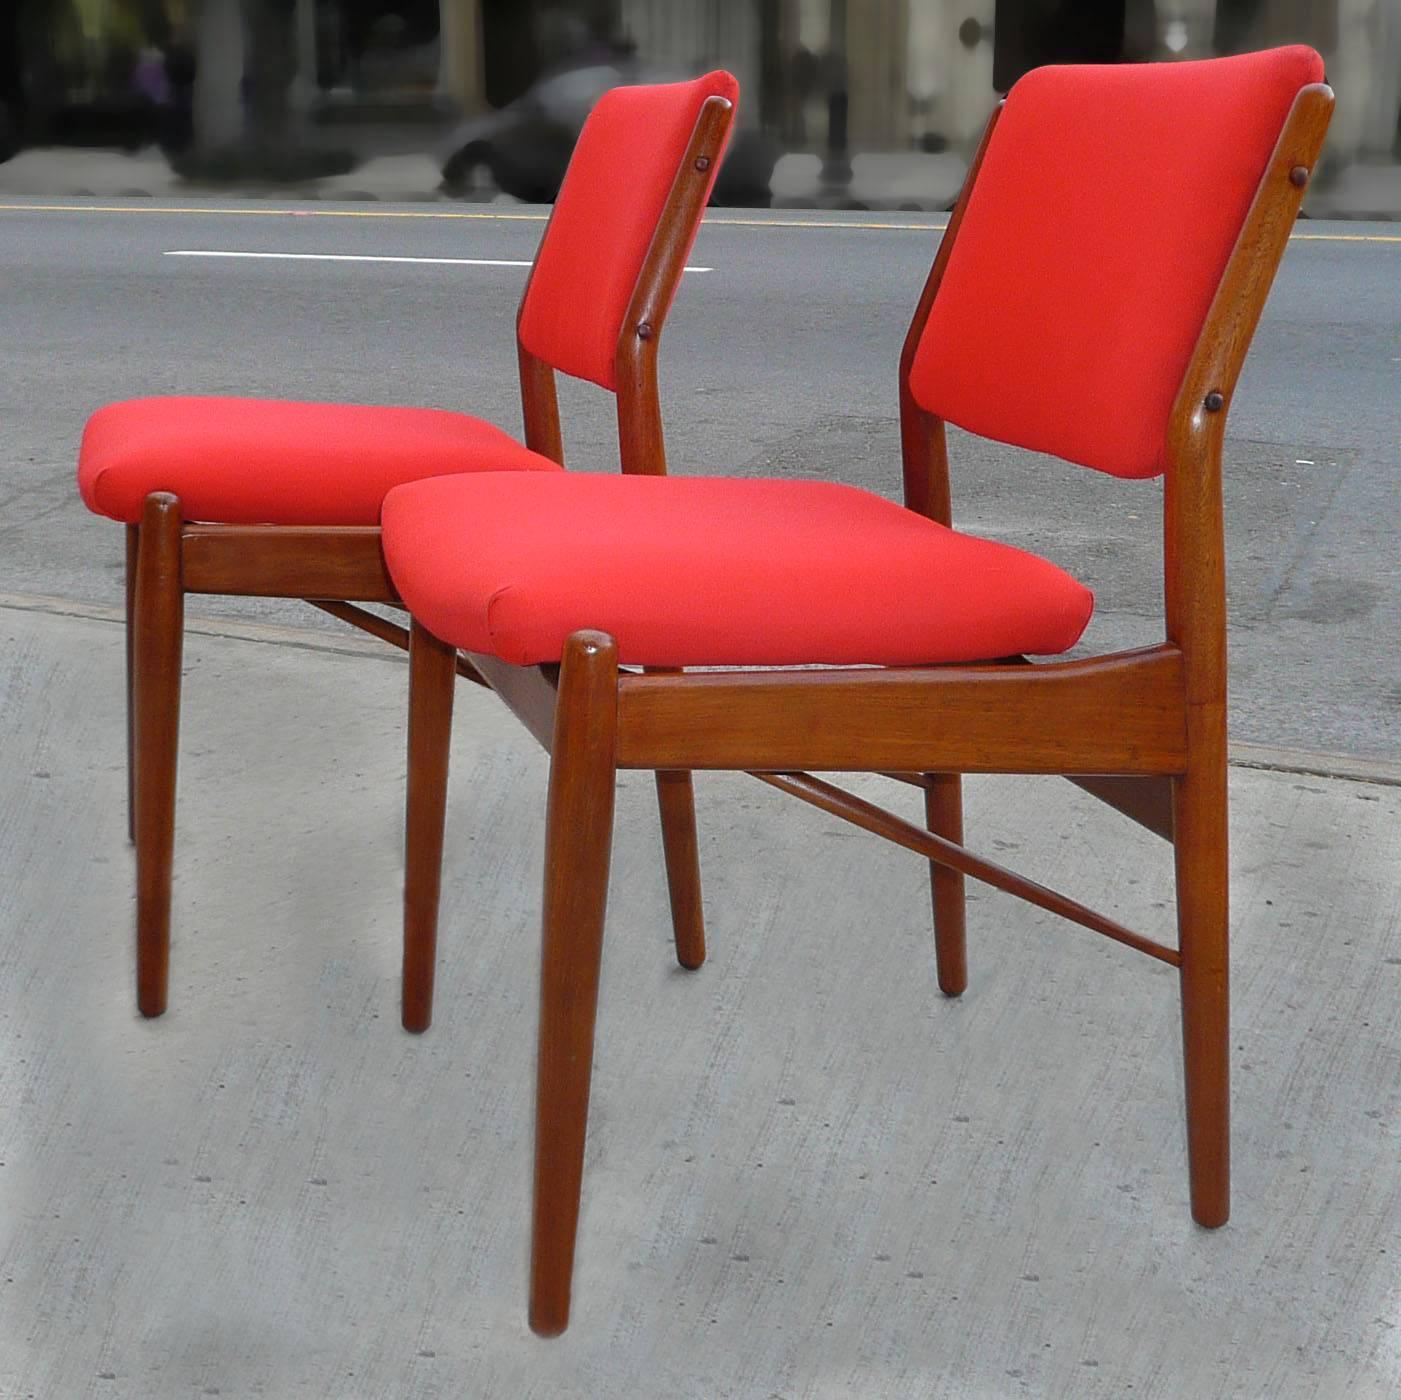 4 Stühle aus Teakholz, dänische moderne Esszimmerstühle von Arne Vodder für Sibast Mobler sind neu aufgearbeitet und warten auf Ihre eigenen Polsterungen.